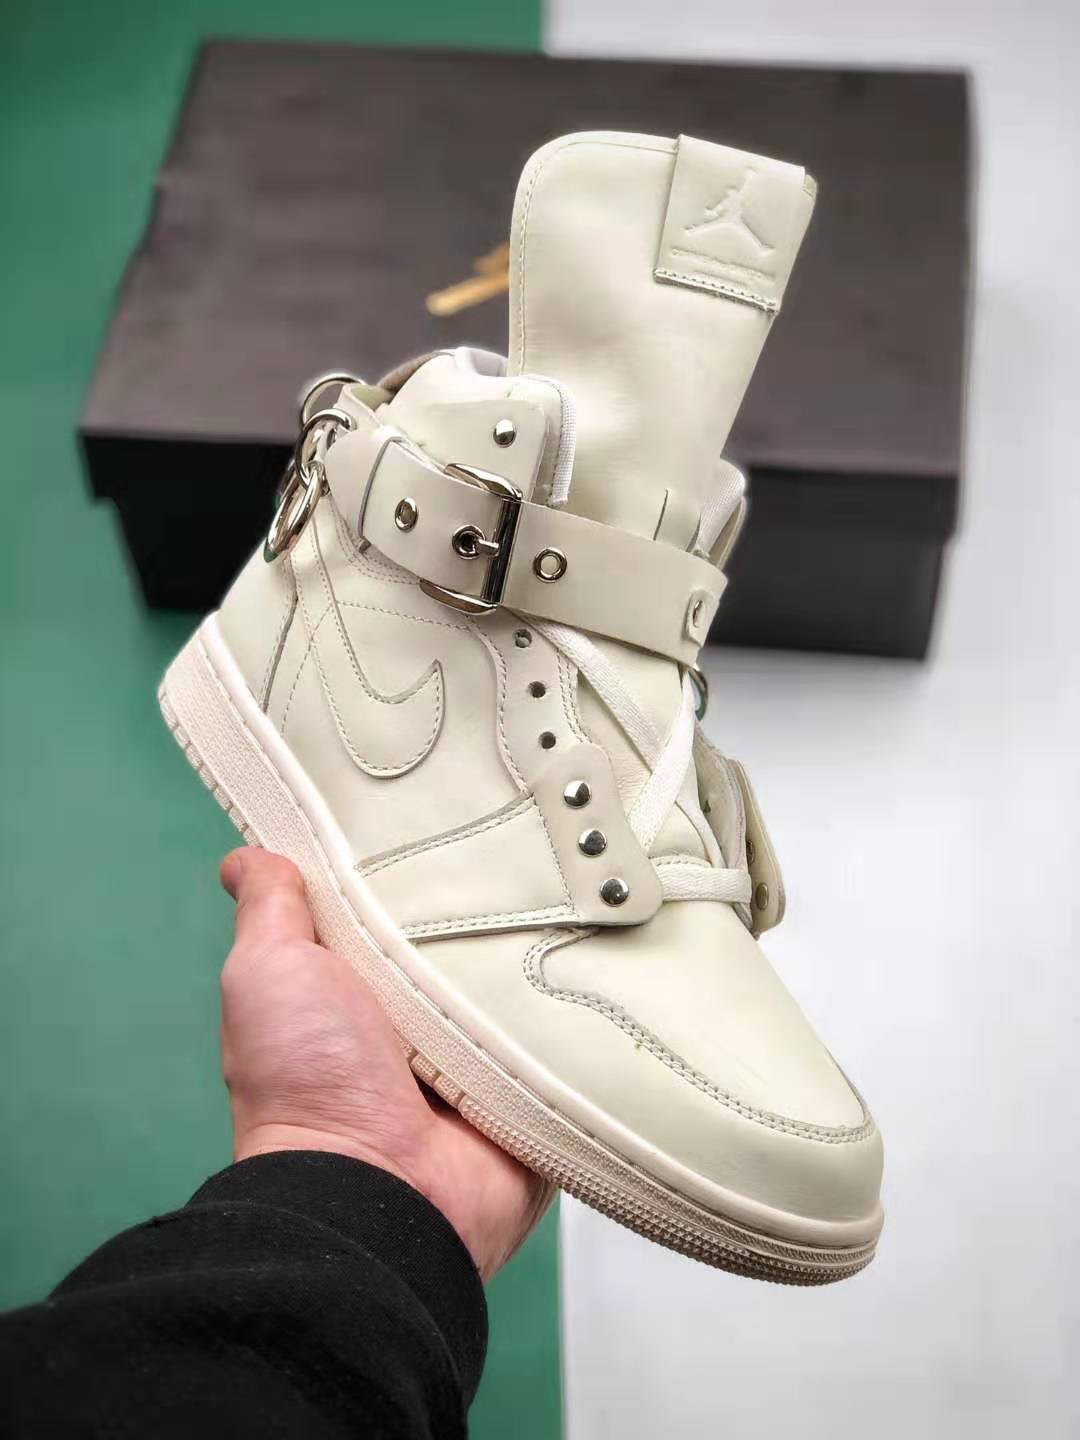 Comme des Garçons x Air Jordan 1 Retro Strap High 'White' CN5738-100 - Premium Collaborative Sneaker | Shop Now!